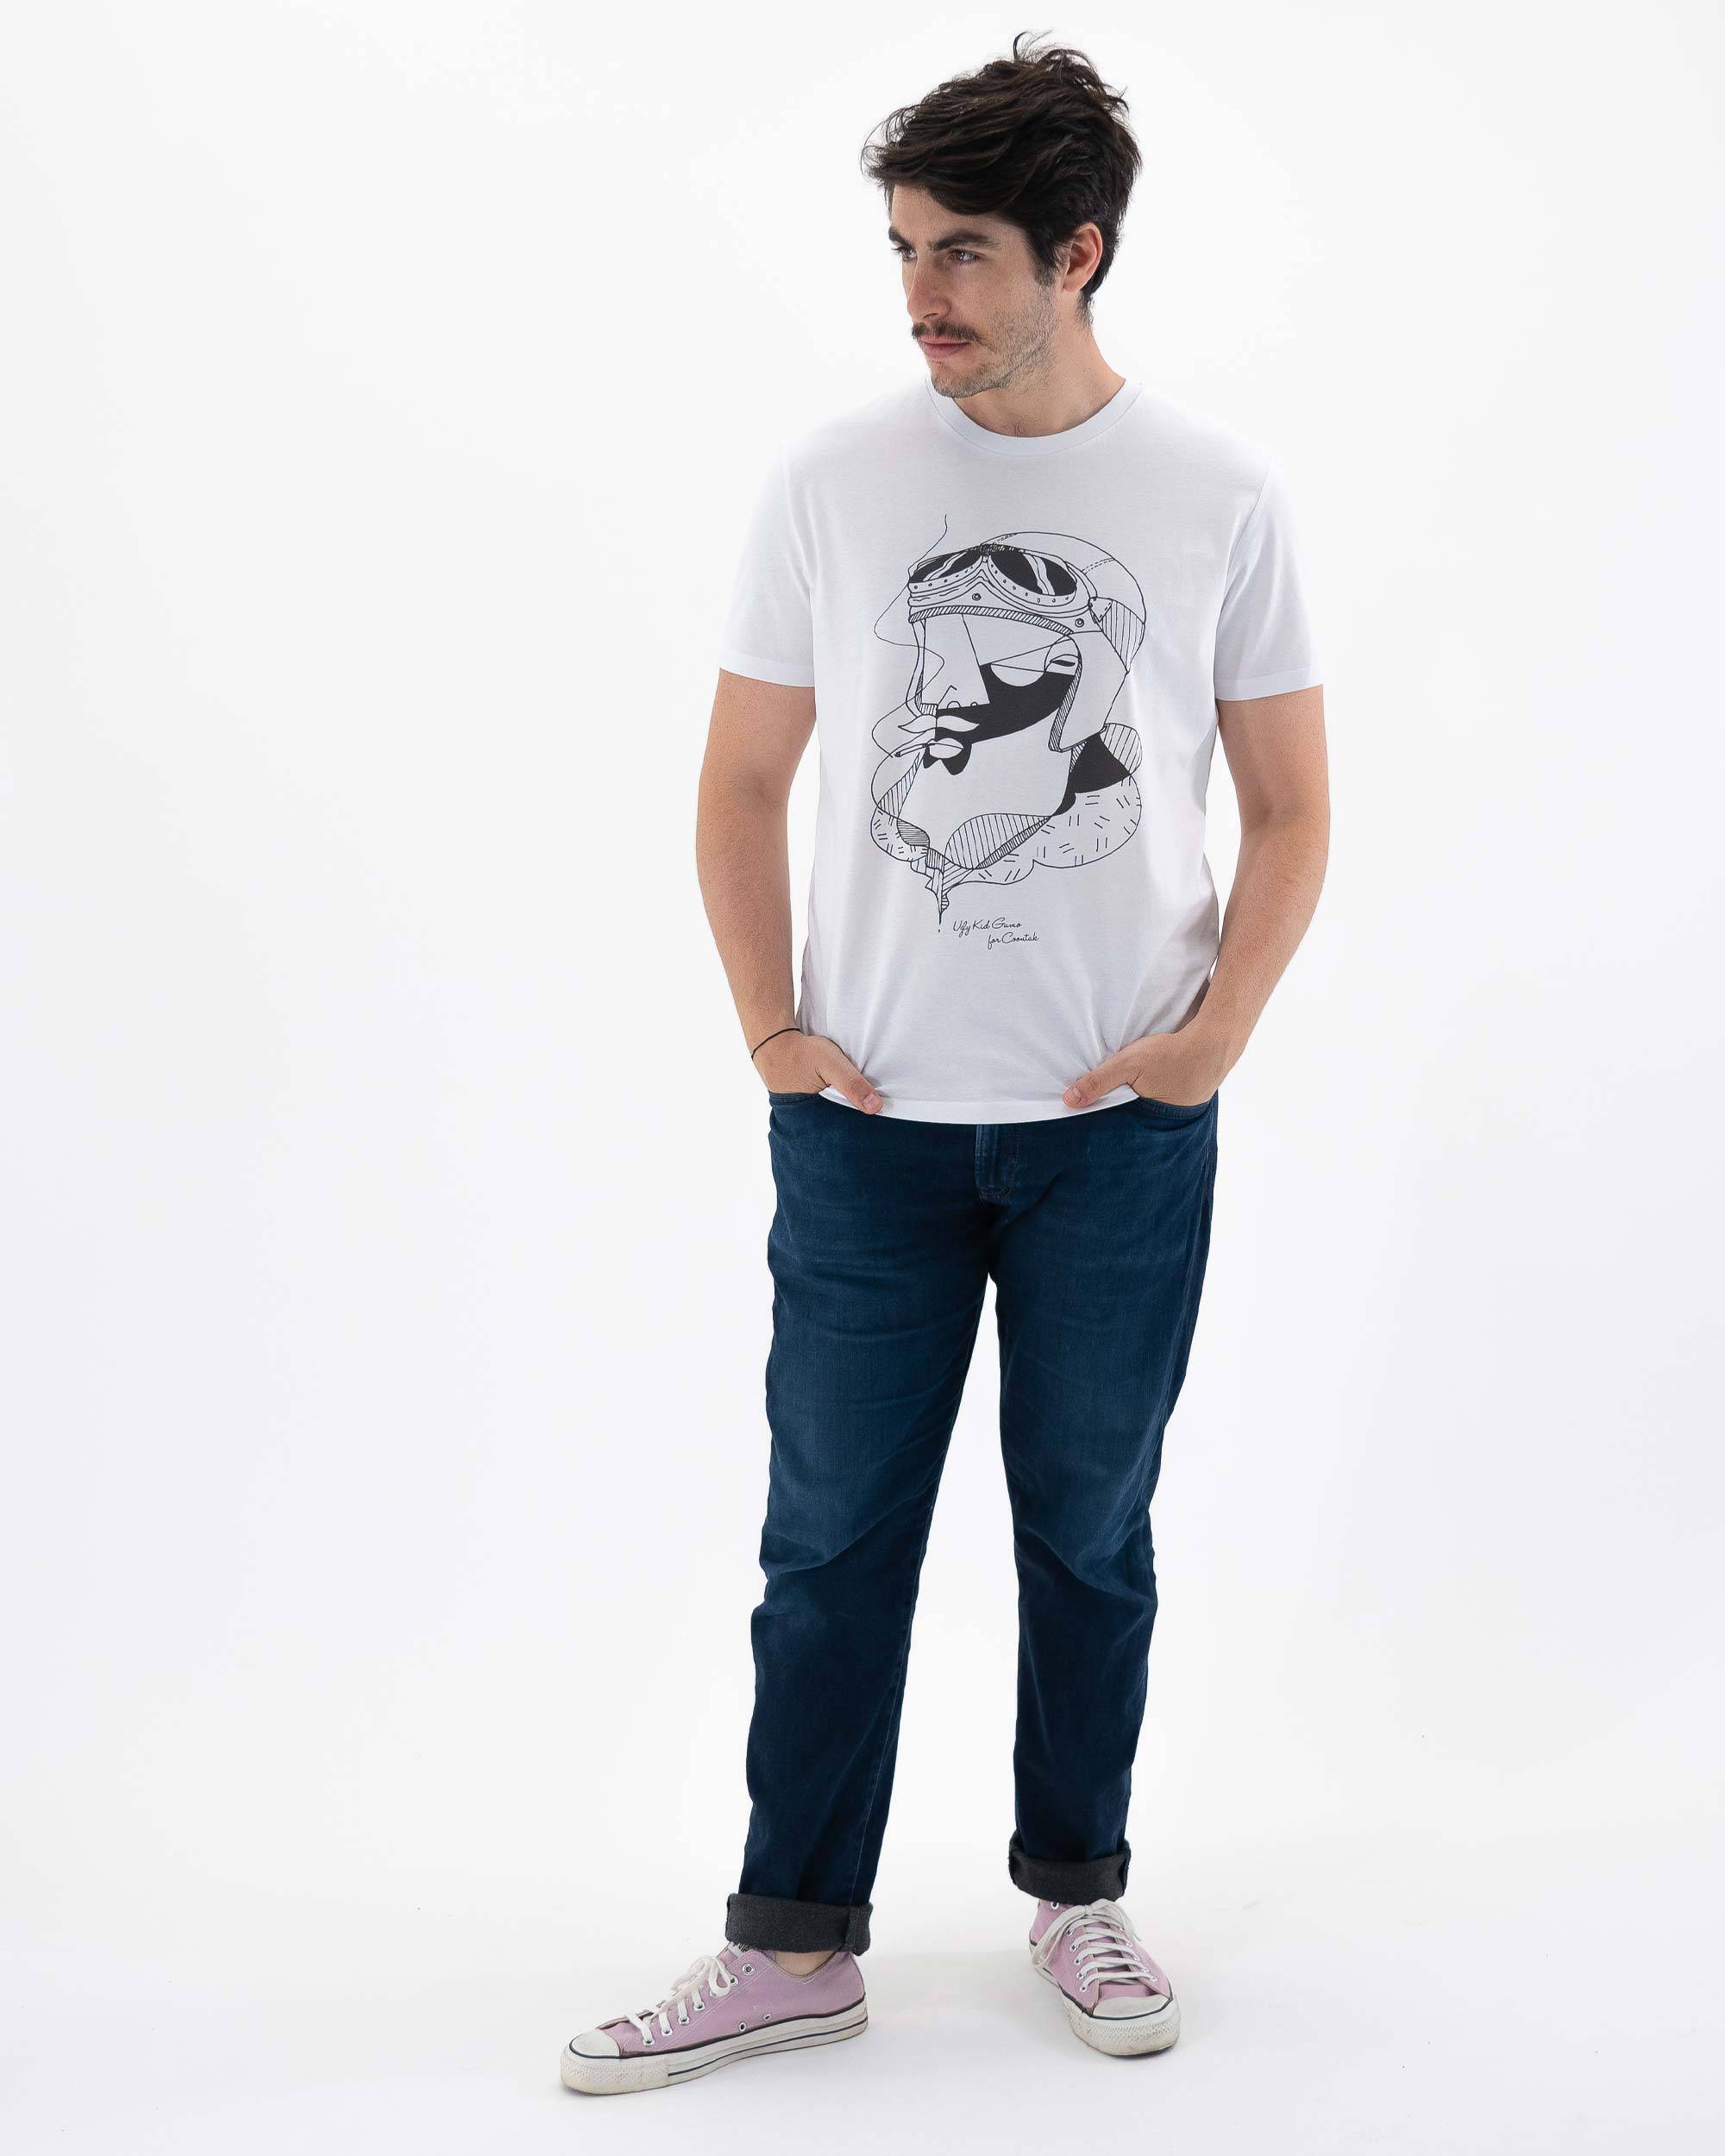 T-shirt Dandy Rider de couleur Blanc par Coontak